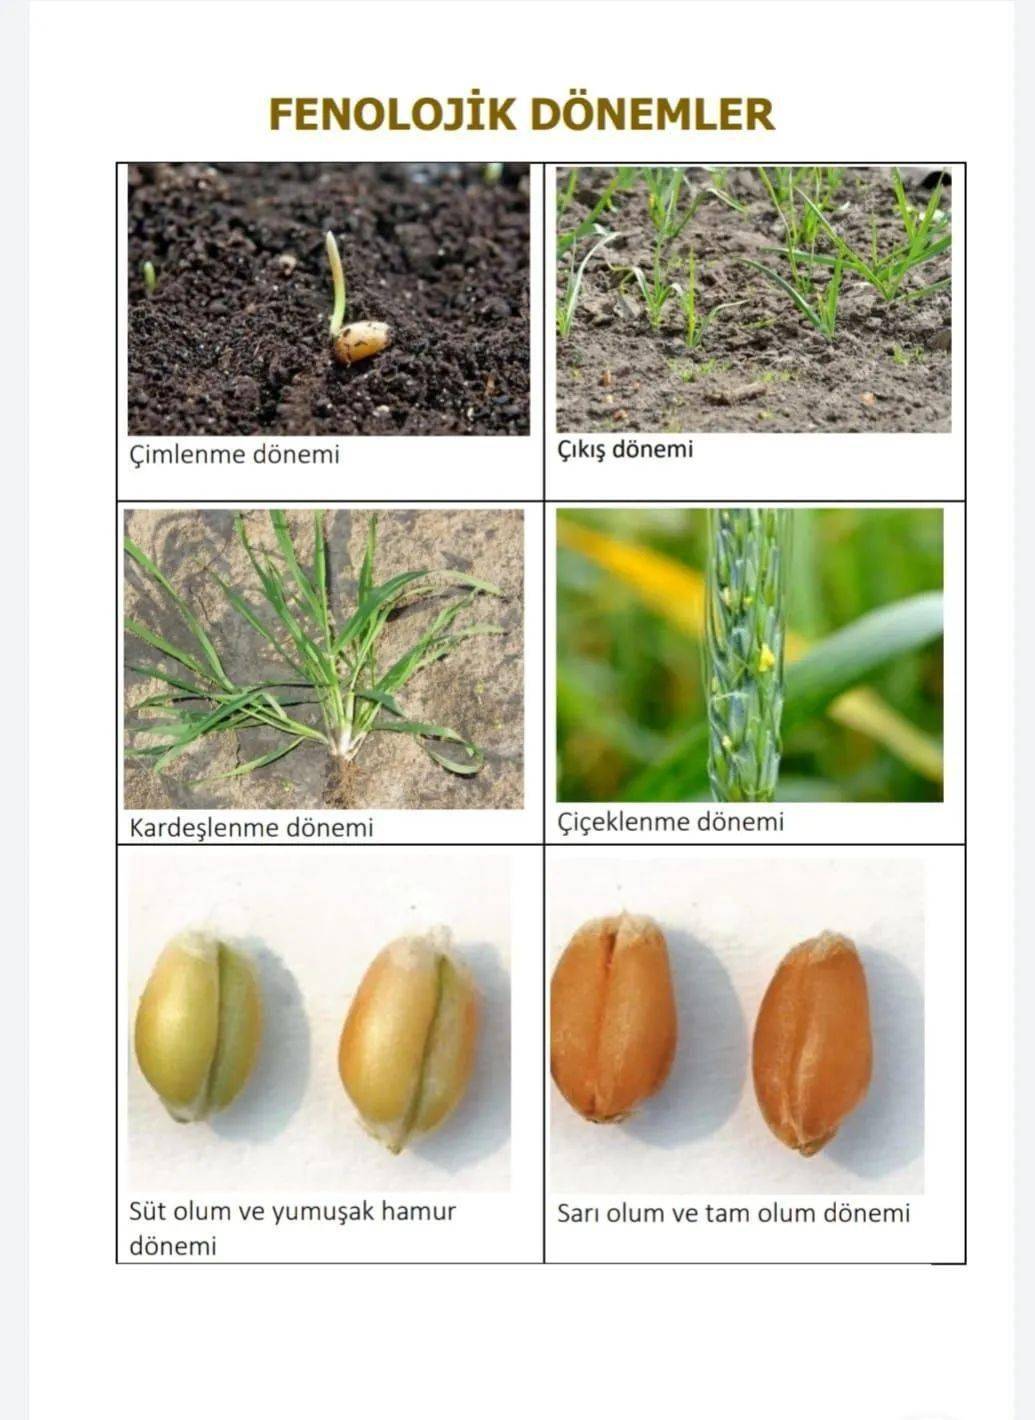 小麦生长发育五个阶段